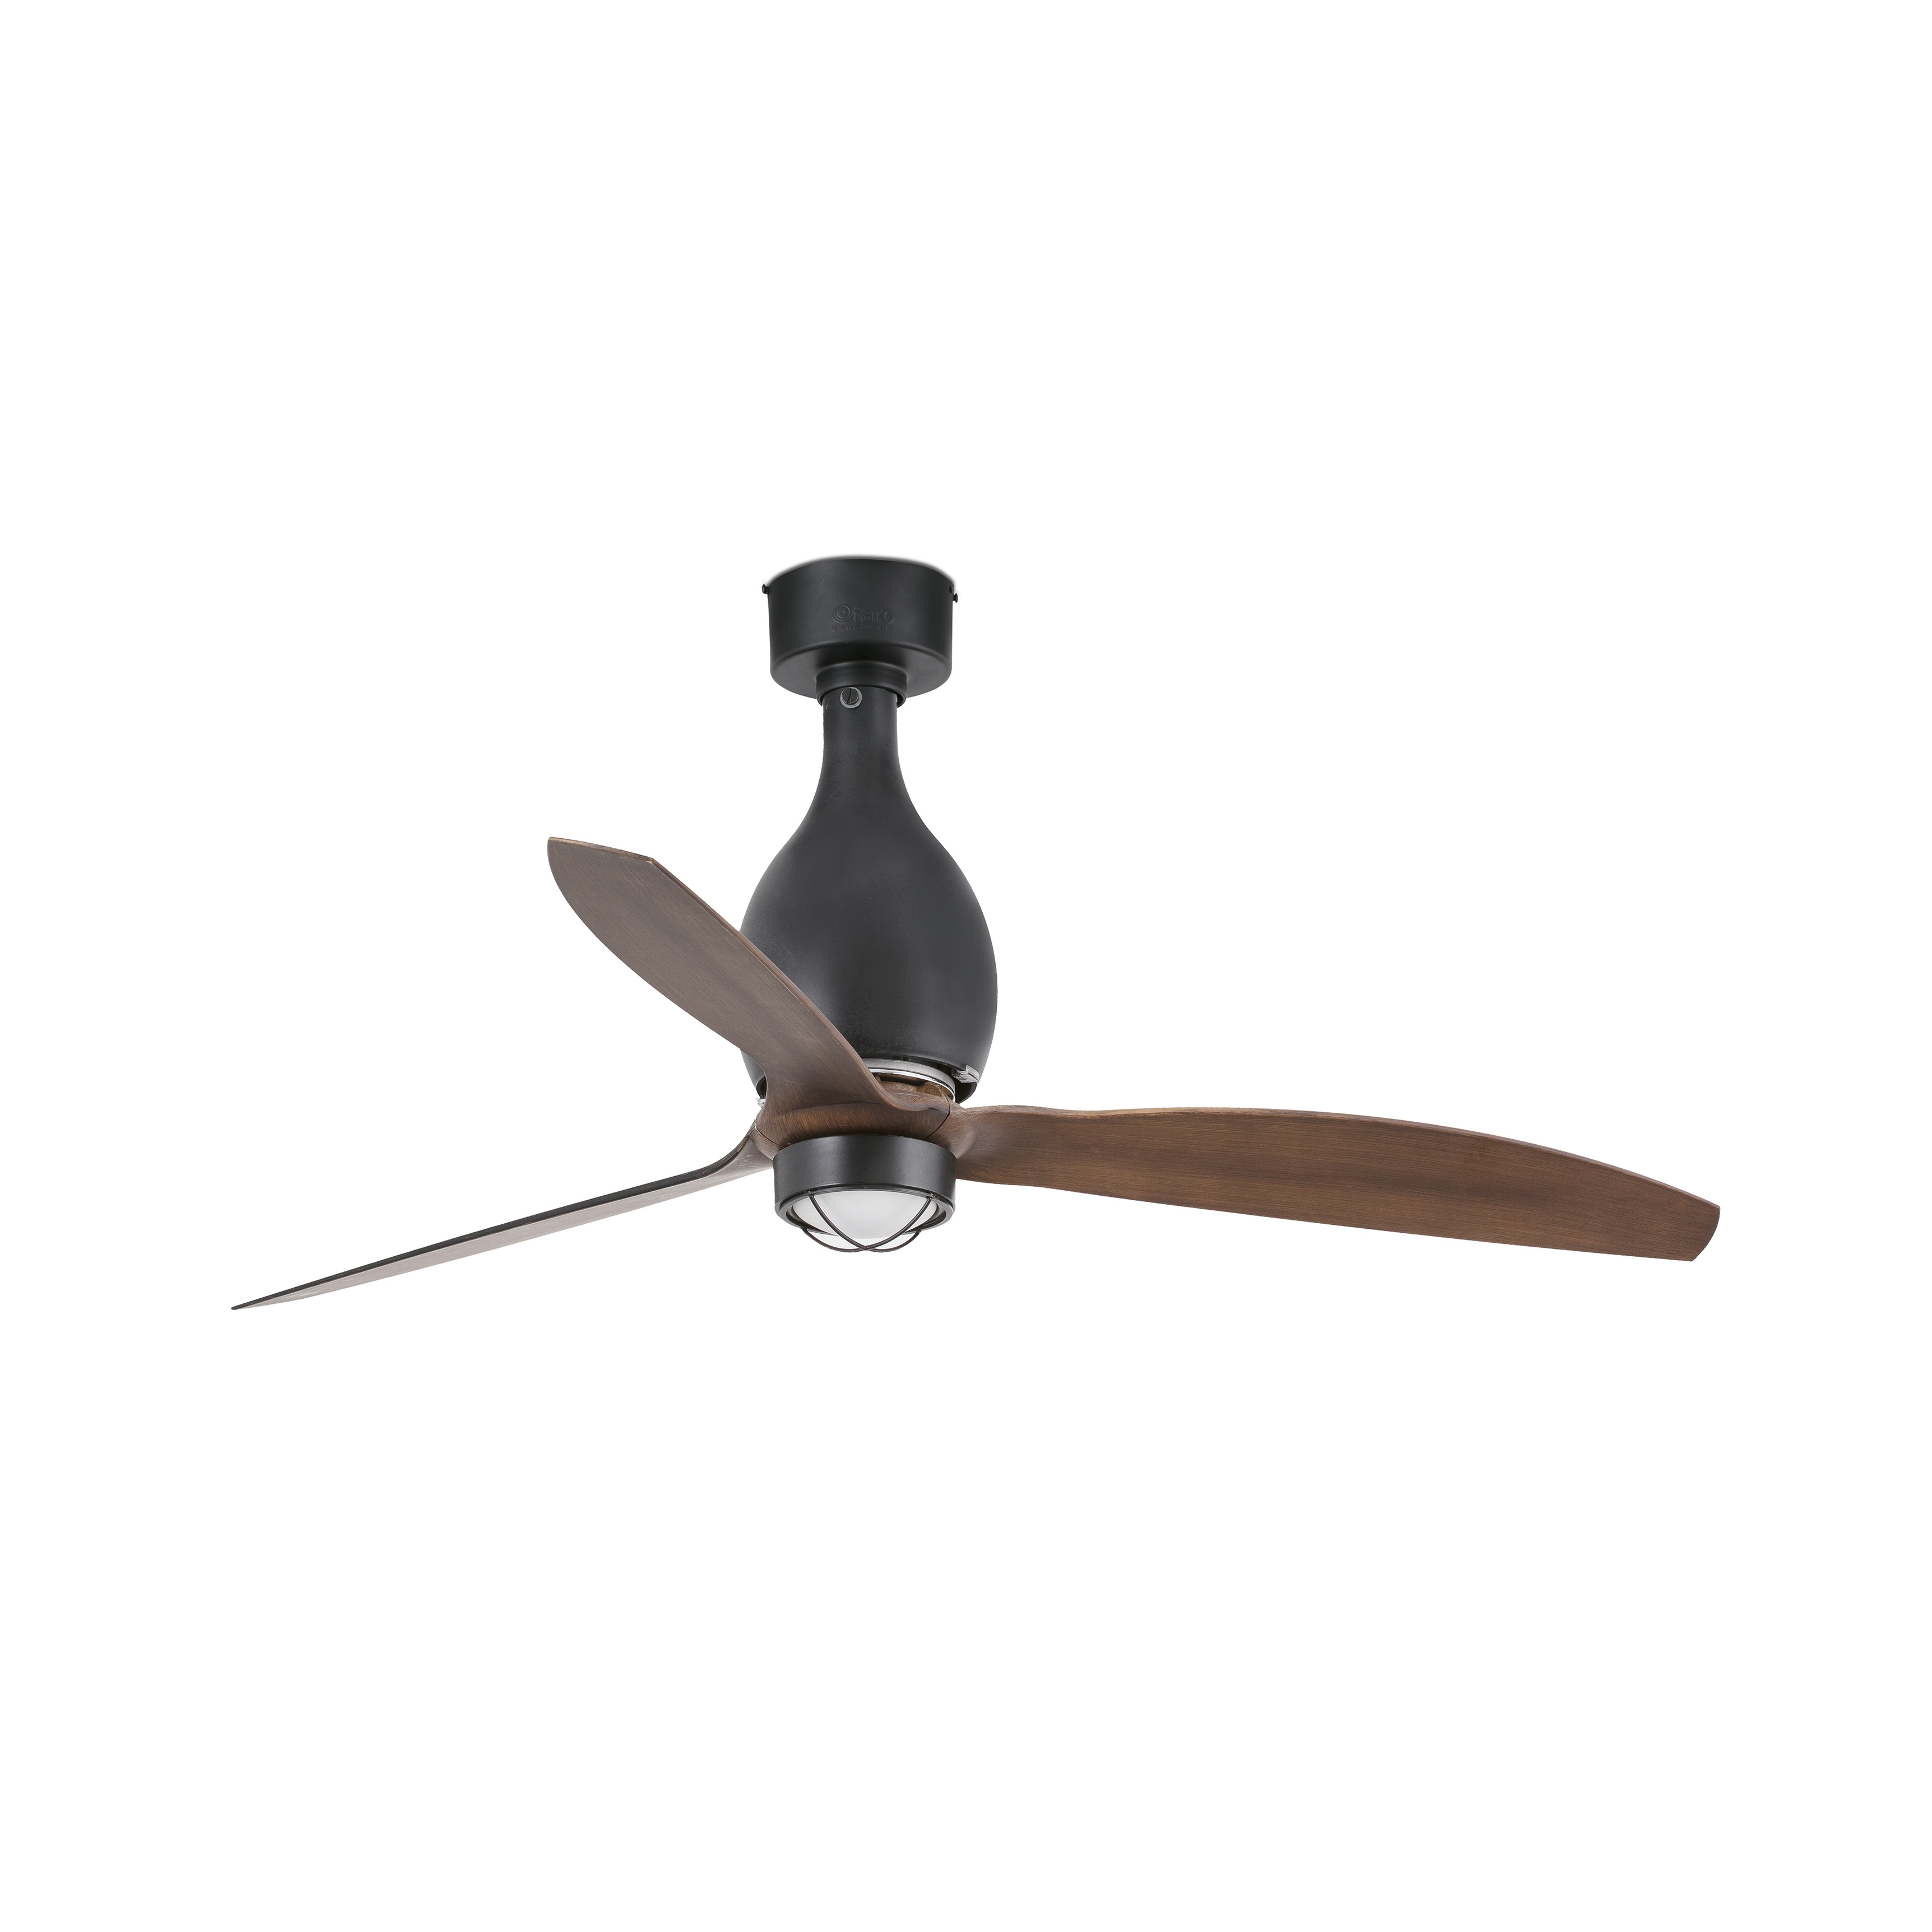 MINI ETERFAN LED Matt black/wood ceiling fan with DC motor